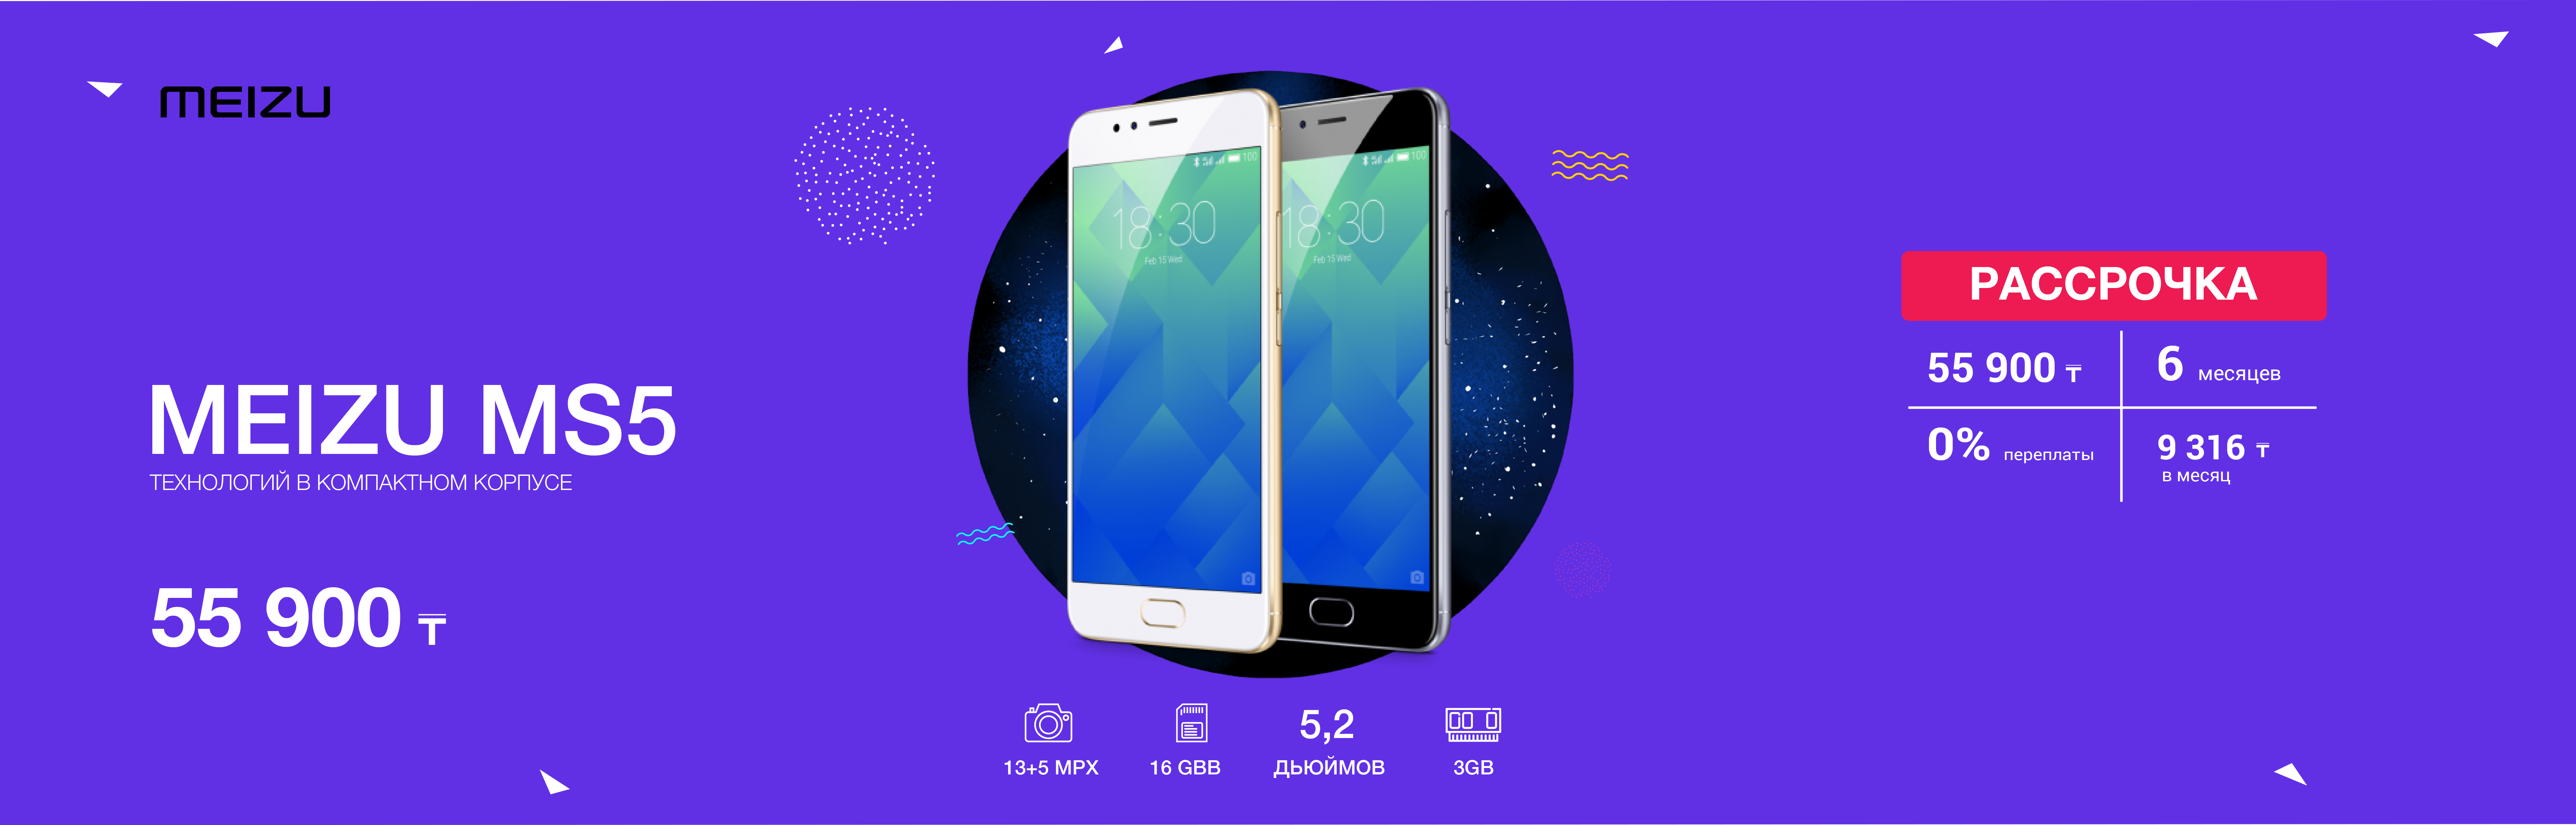 Аккумулятор на мобильный телефон Meizu M5S Hoco купить в интернет-магазине Wildberries